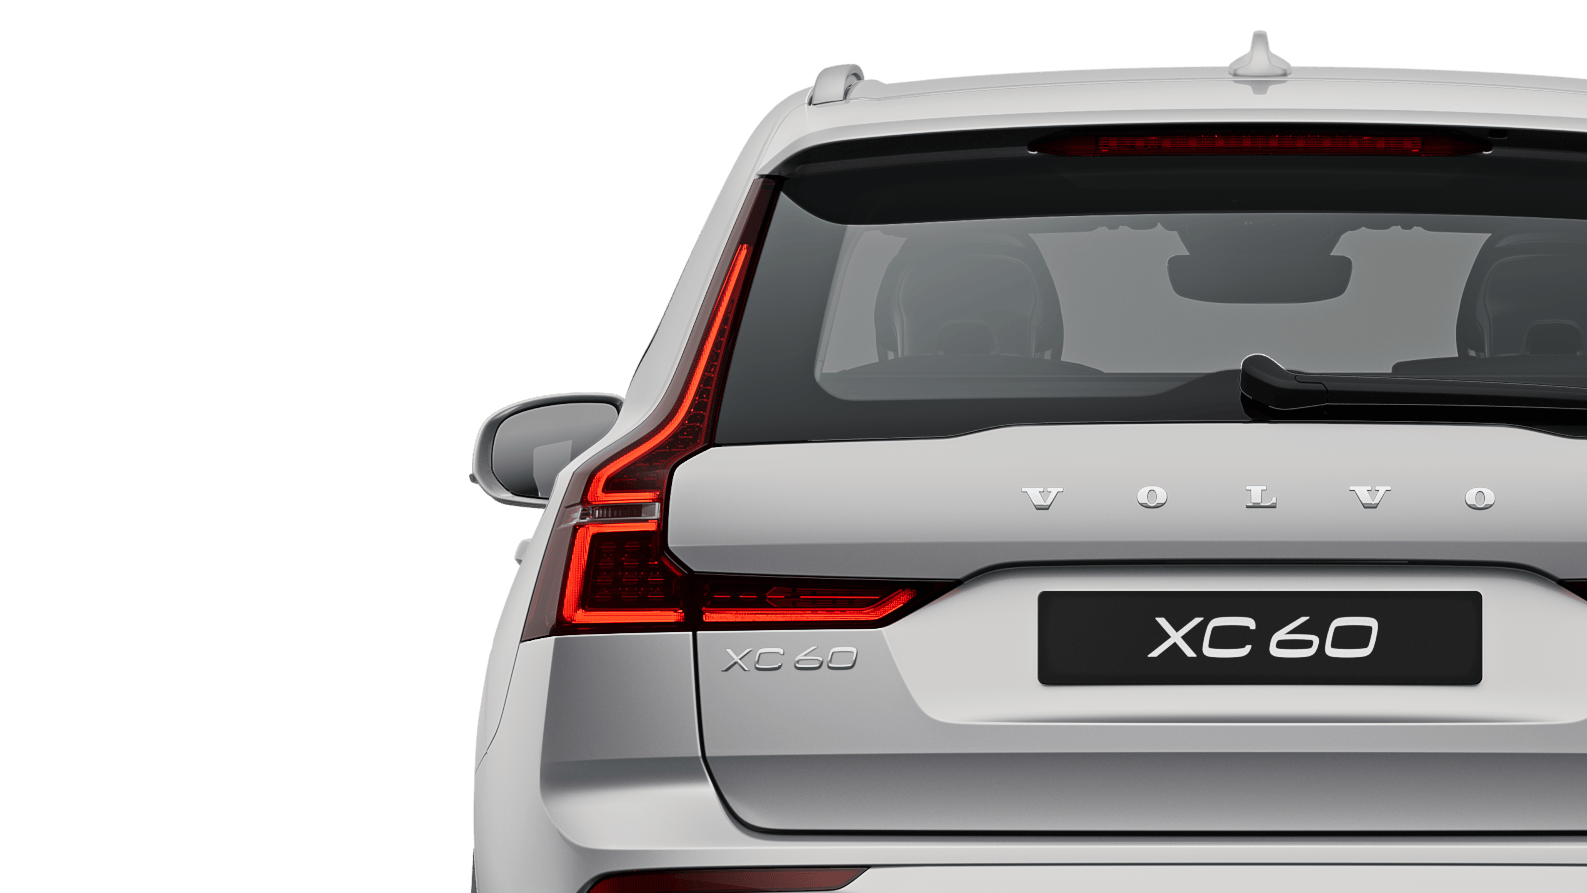 Անշարժ կանգնած արծաթագույն մետալիկ վերալիցքավորվող հիբրիդային Volvo XC60 Recharge մեքենա